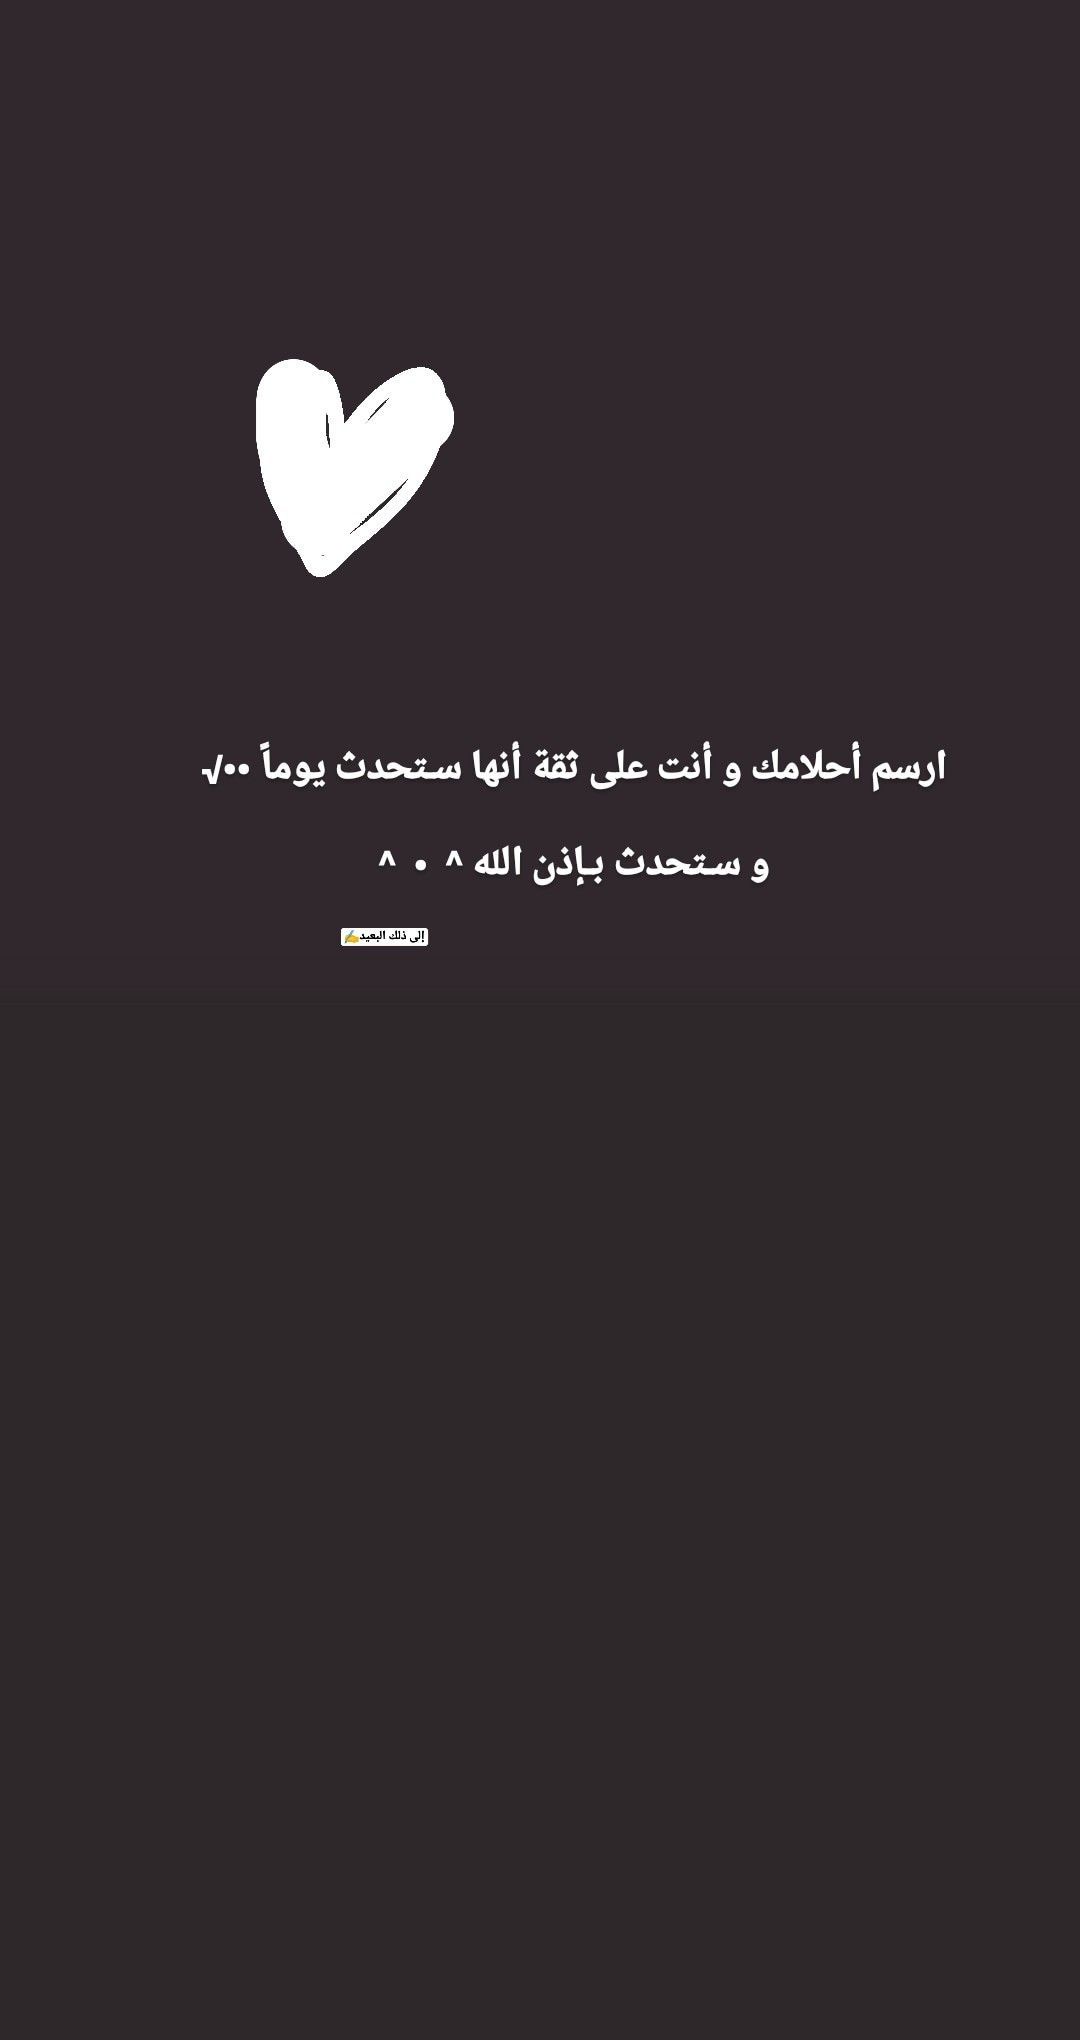 إلى ذلك البعيد⁦✍️⁩. Arabic quotes, Snapchat quotes, Some words